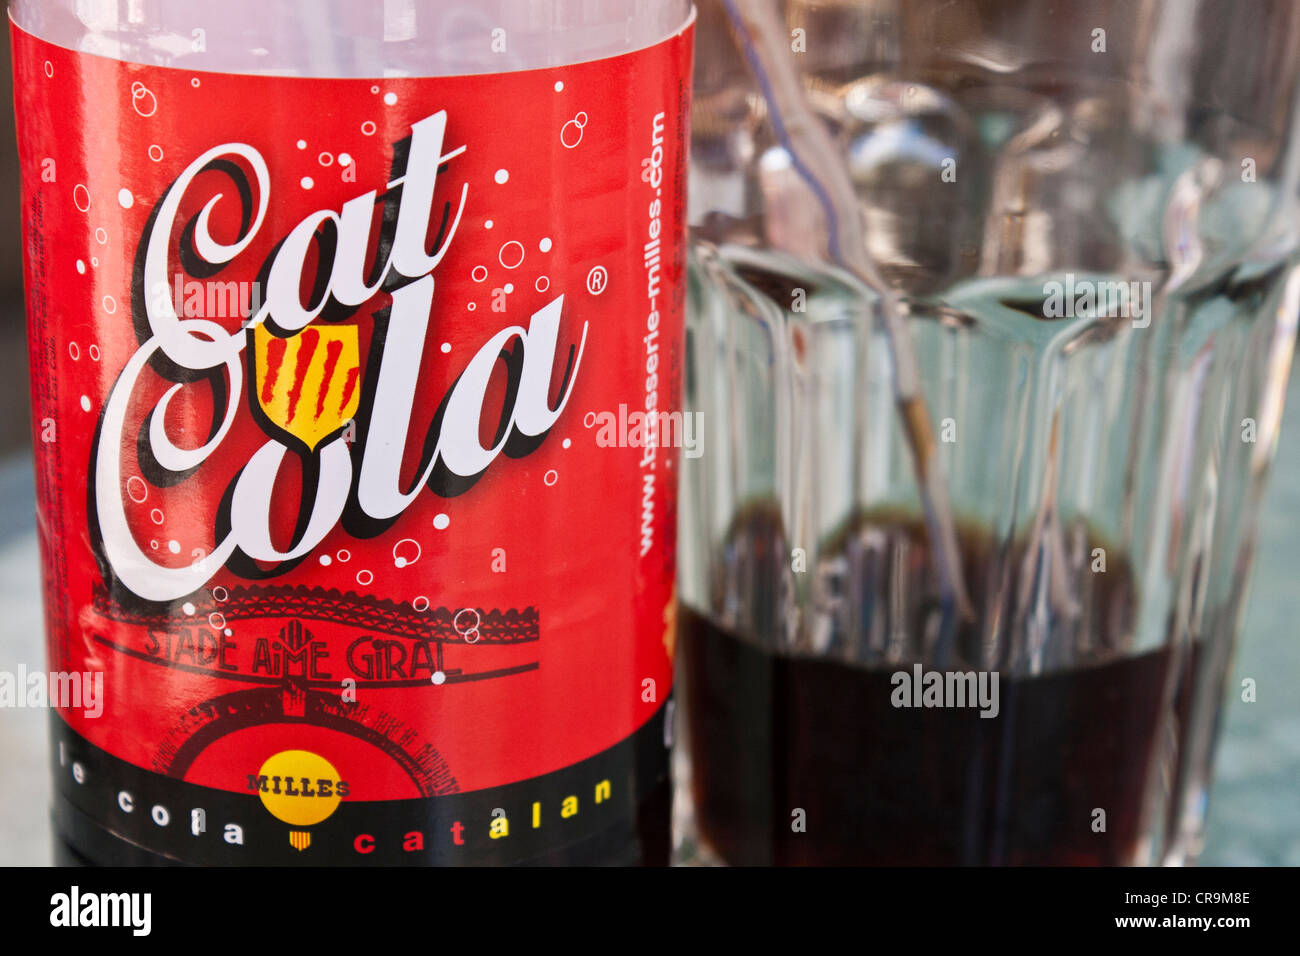 Une bouteille de cola et demi-fini verre de cola à partir de la région Catalane du sud de la France Banque D'Images